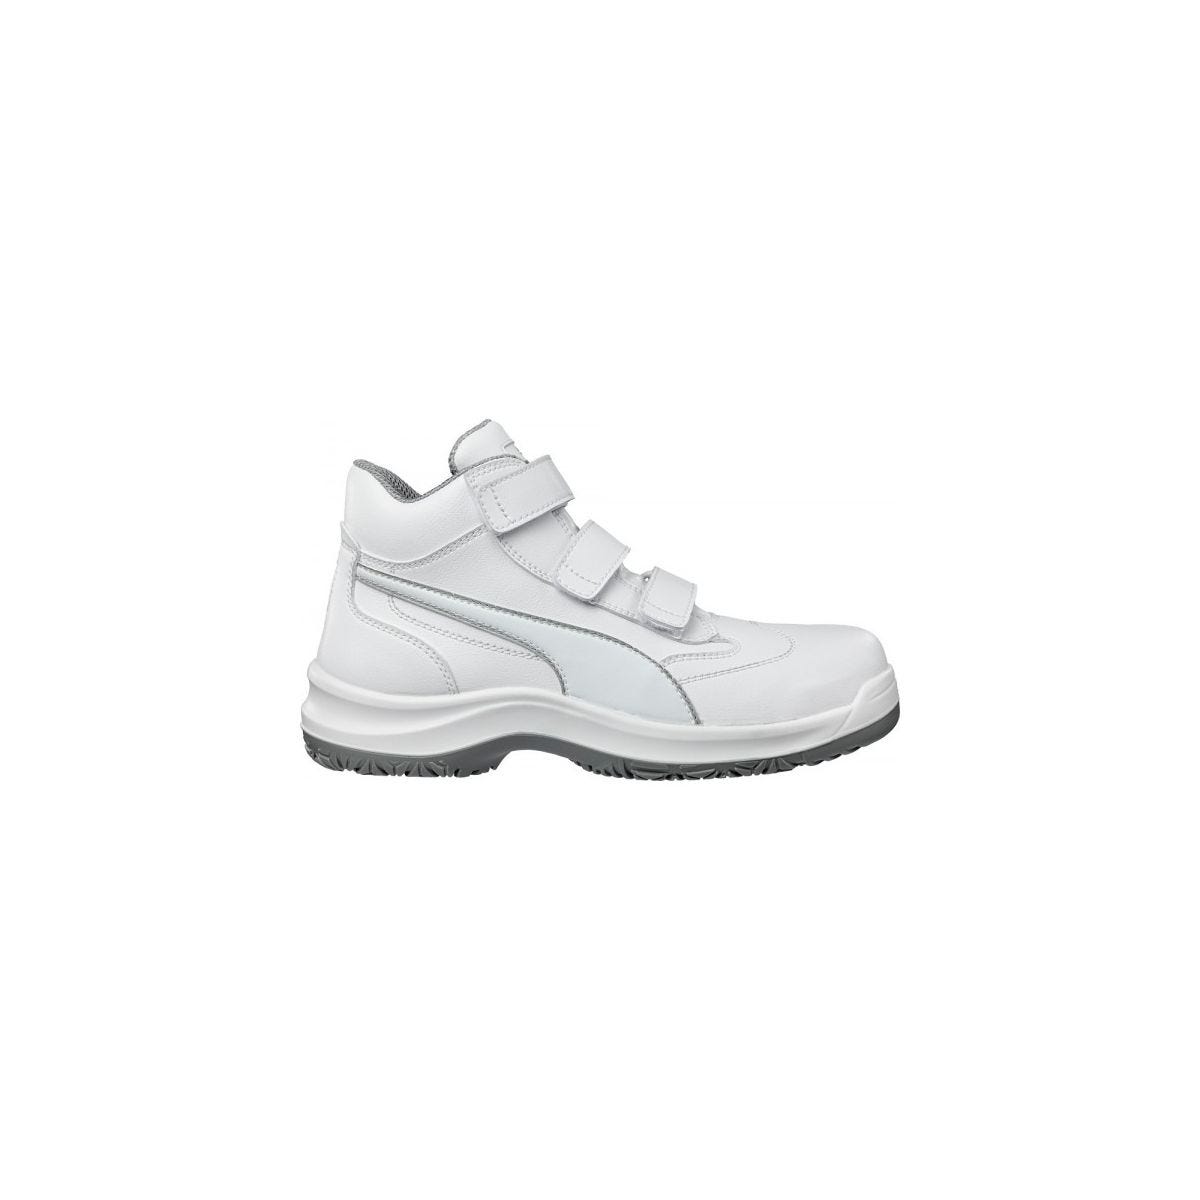 Chaussures de sécurité Absolute Mid S2 Blanc - Puma - Taille 37 0